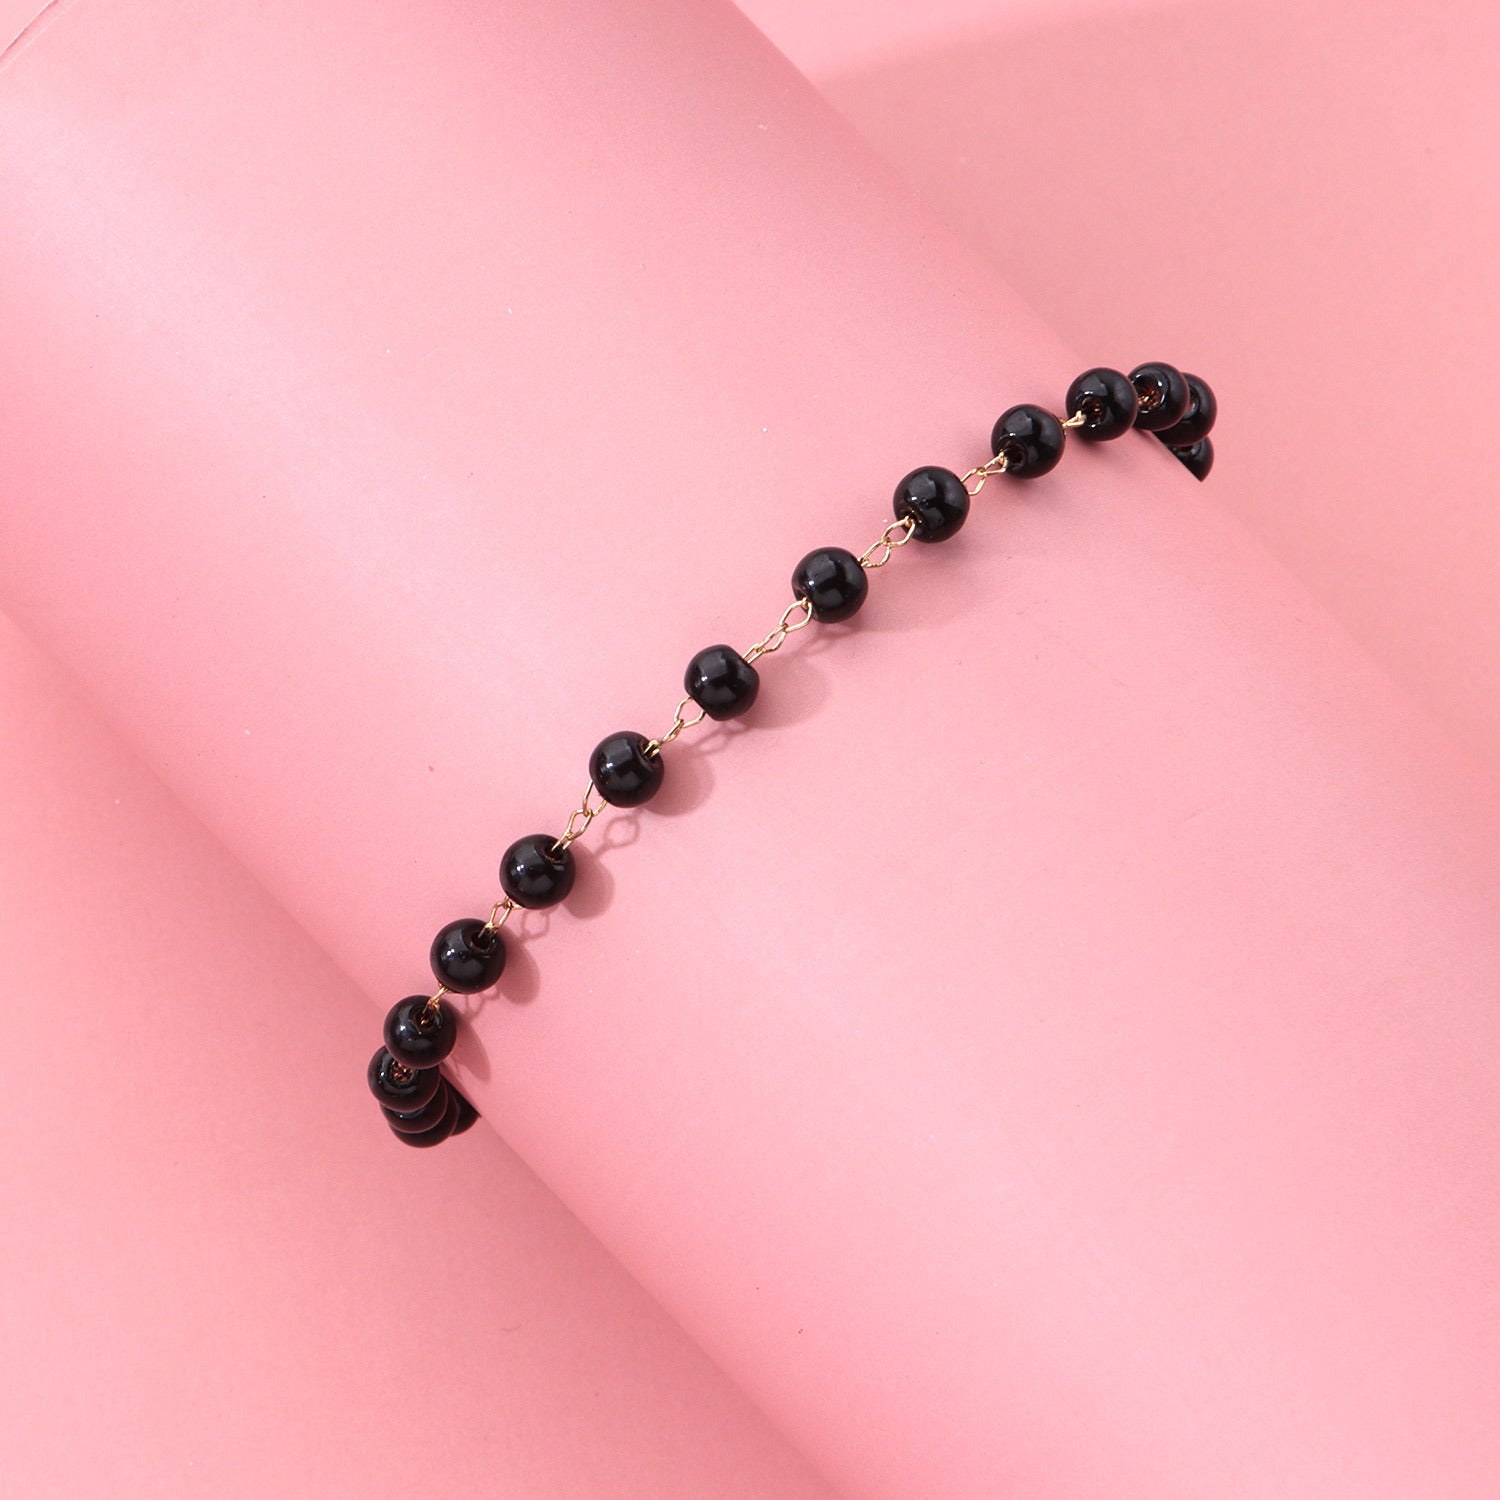 Trendy Black Crystal Beads Anklet for Women